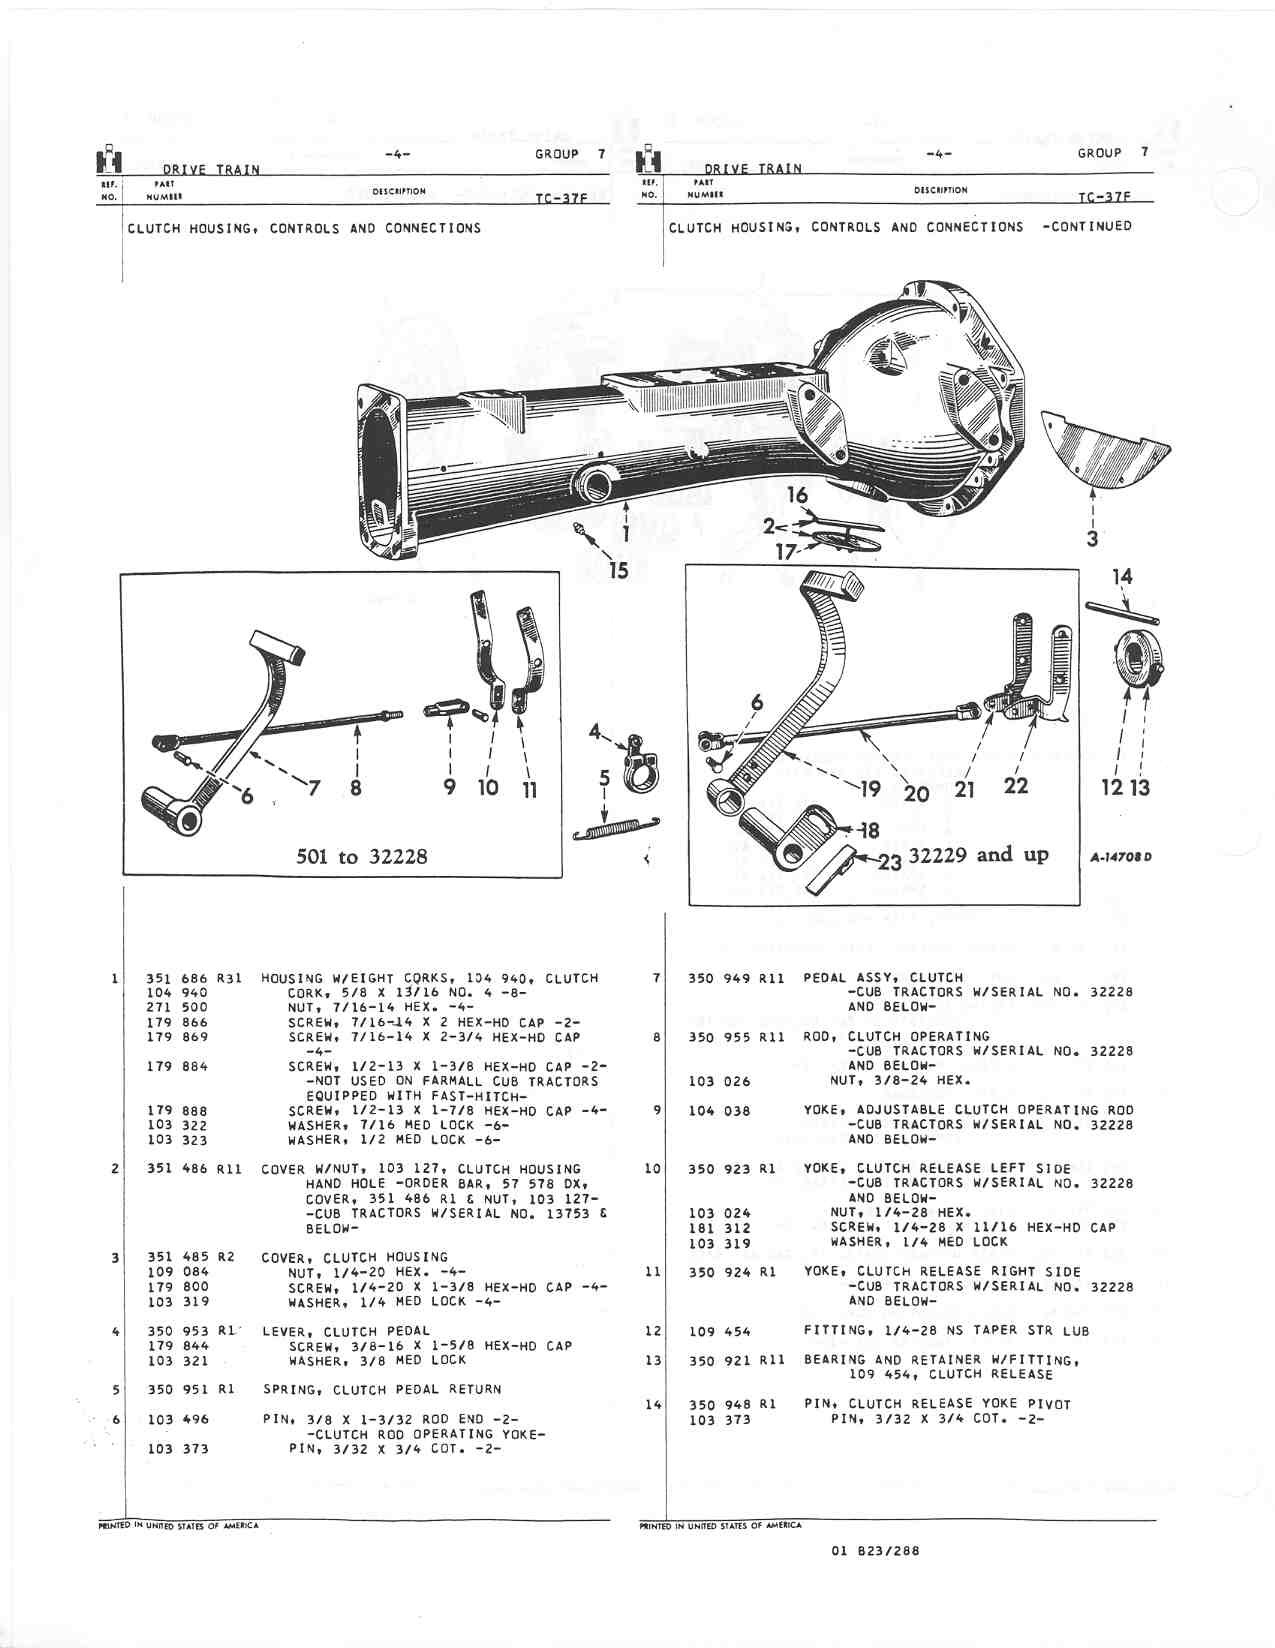 Farmall Cub Parts Diagram Clutch Pedal assembly and Linkage Farmall Cub Of Farmall Cub Parts Diagram